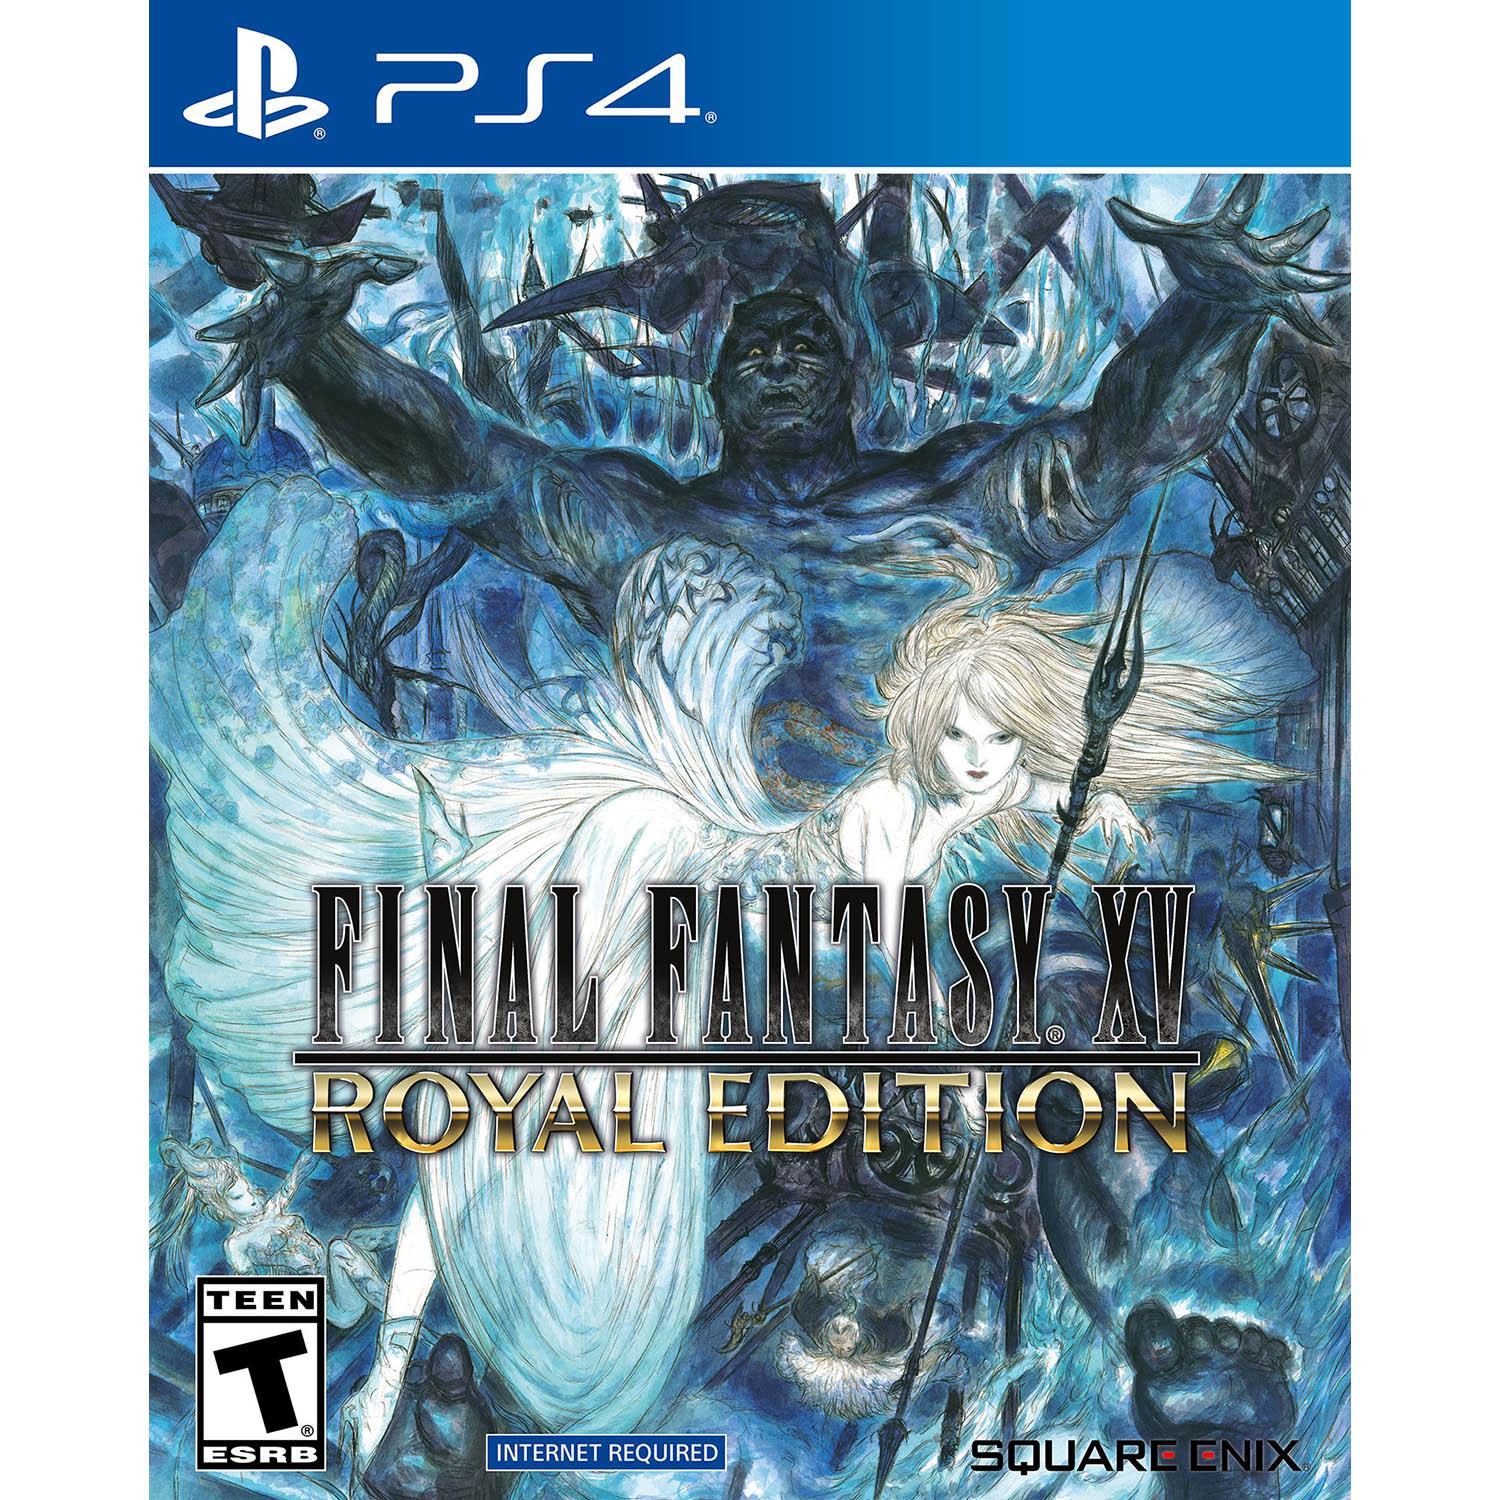 Final Fantasy XV Royal Edition PS4 for $9.88